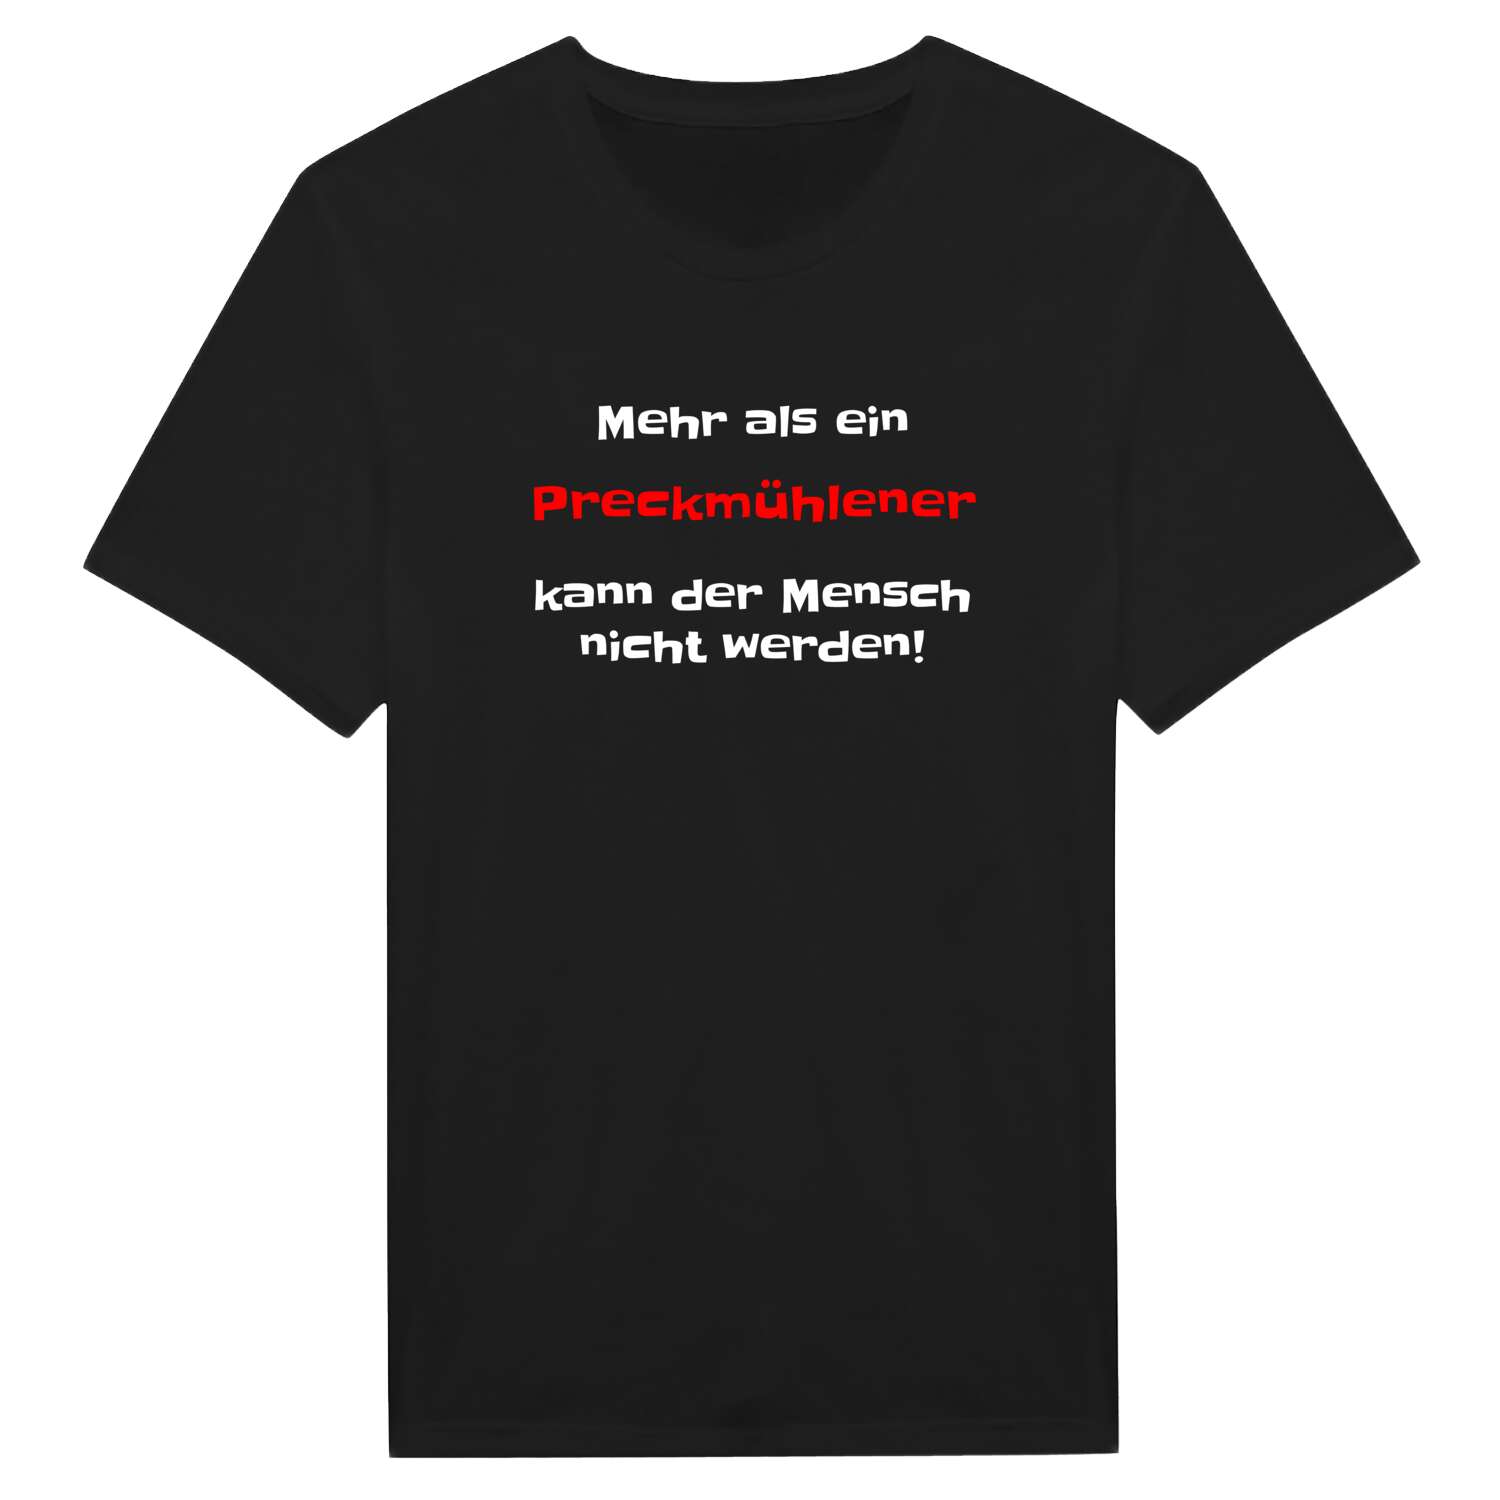 Preckmühle T-Shirt »Mehr als ein«